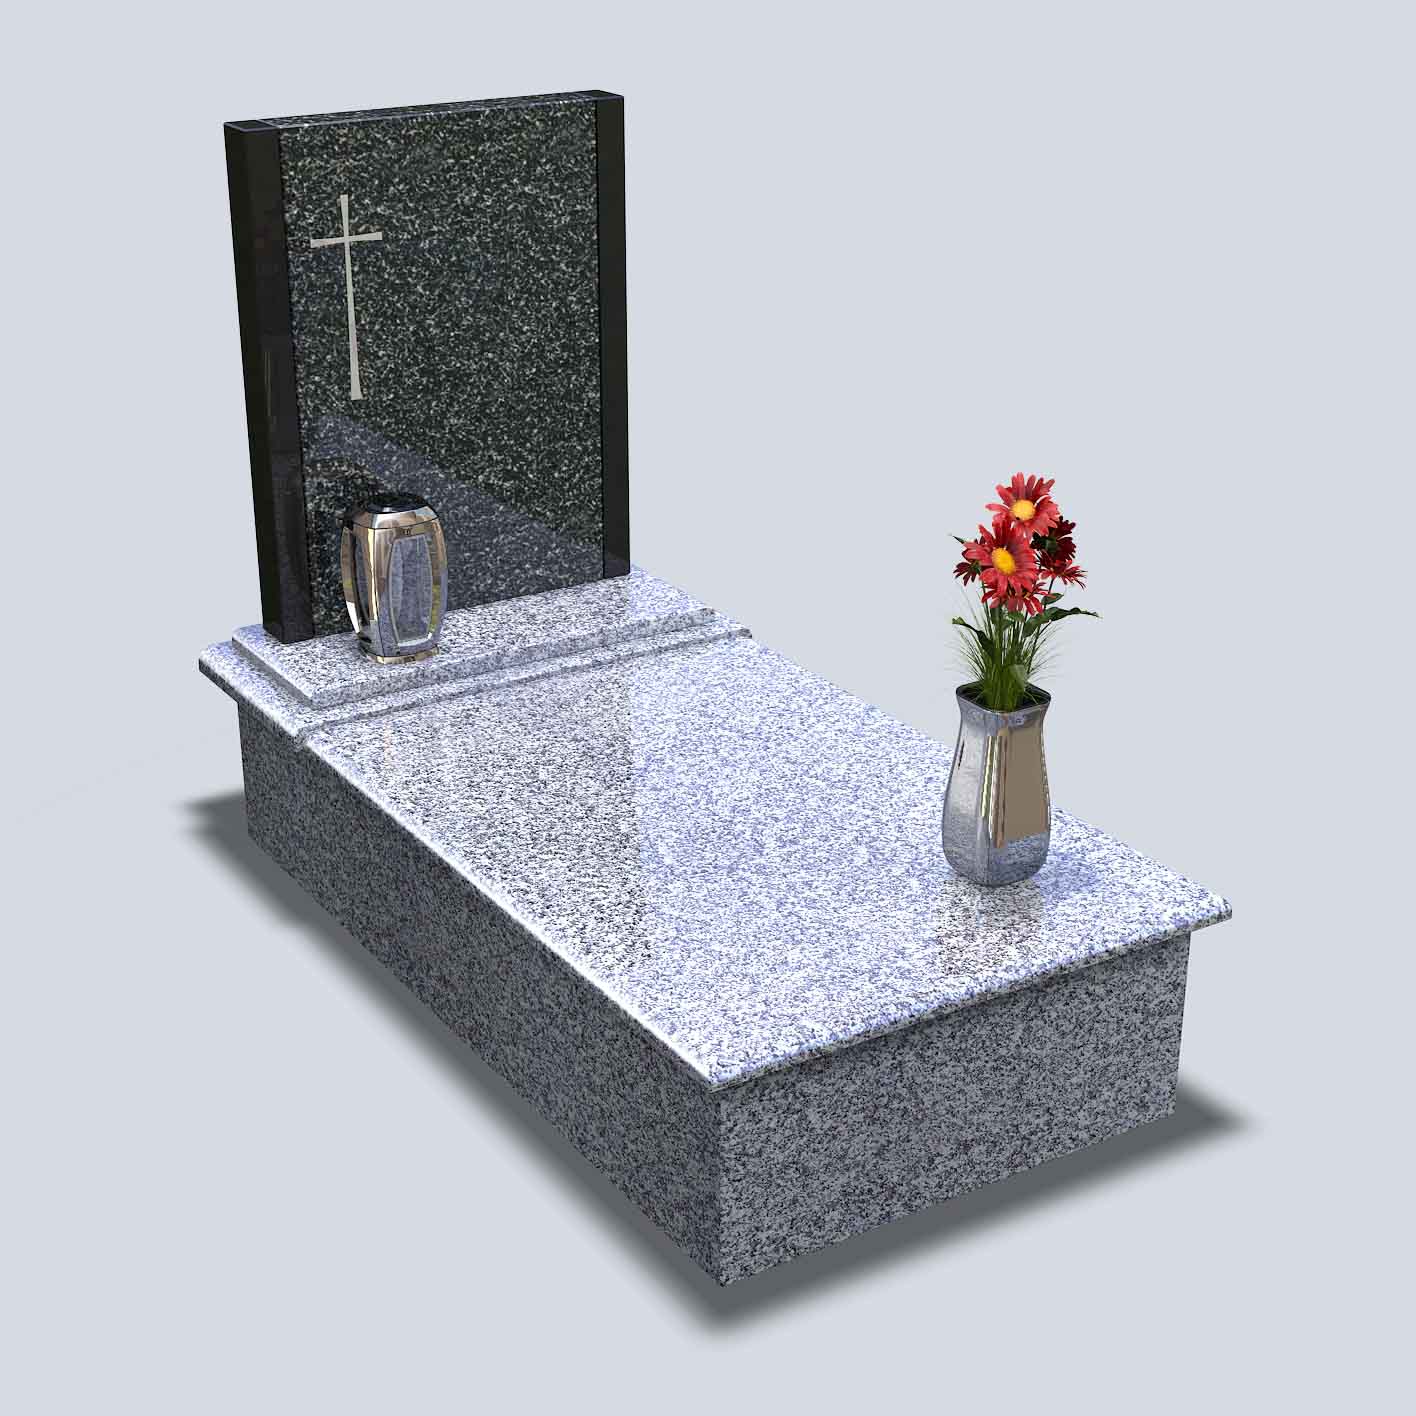 Urnový hrob s tmavou nápisnou tabuľou zo žuly a antikórovými doplnkami ako je svietnik a váza s kvetmi